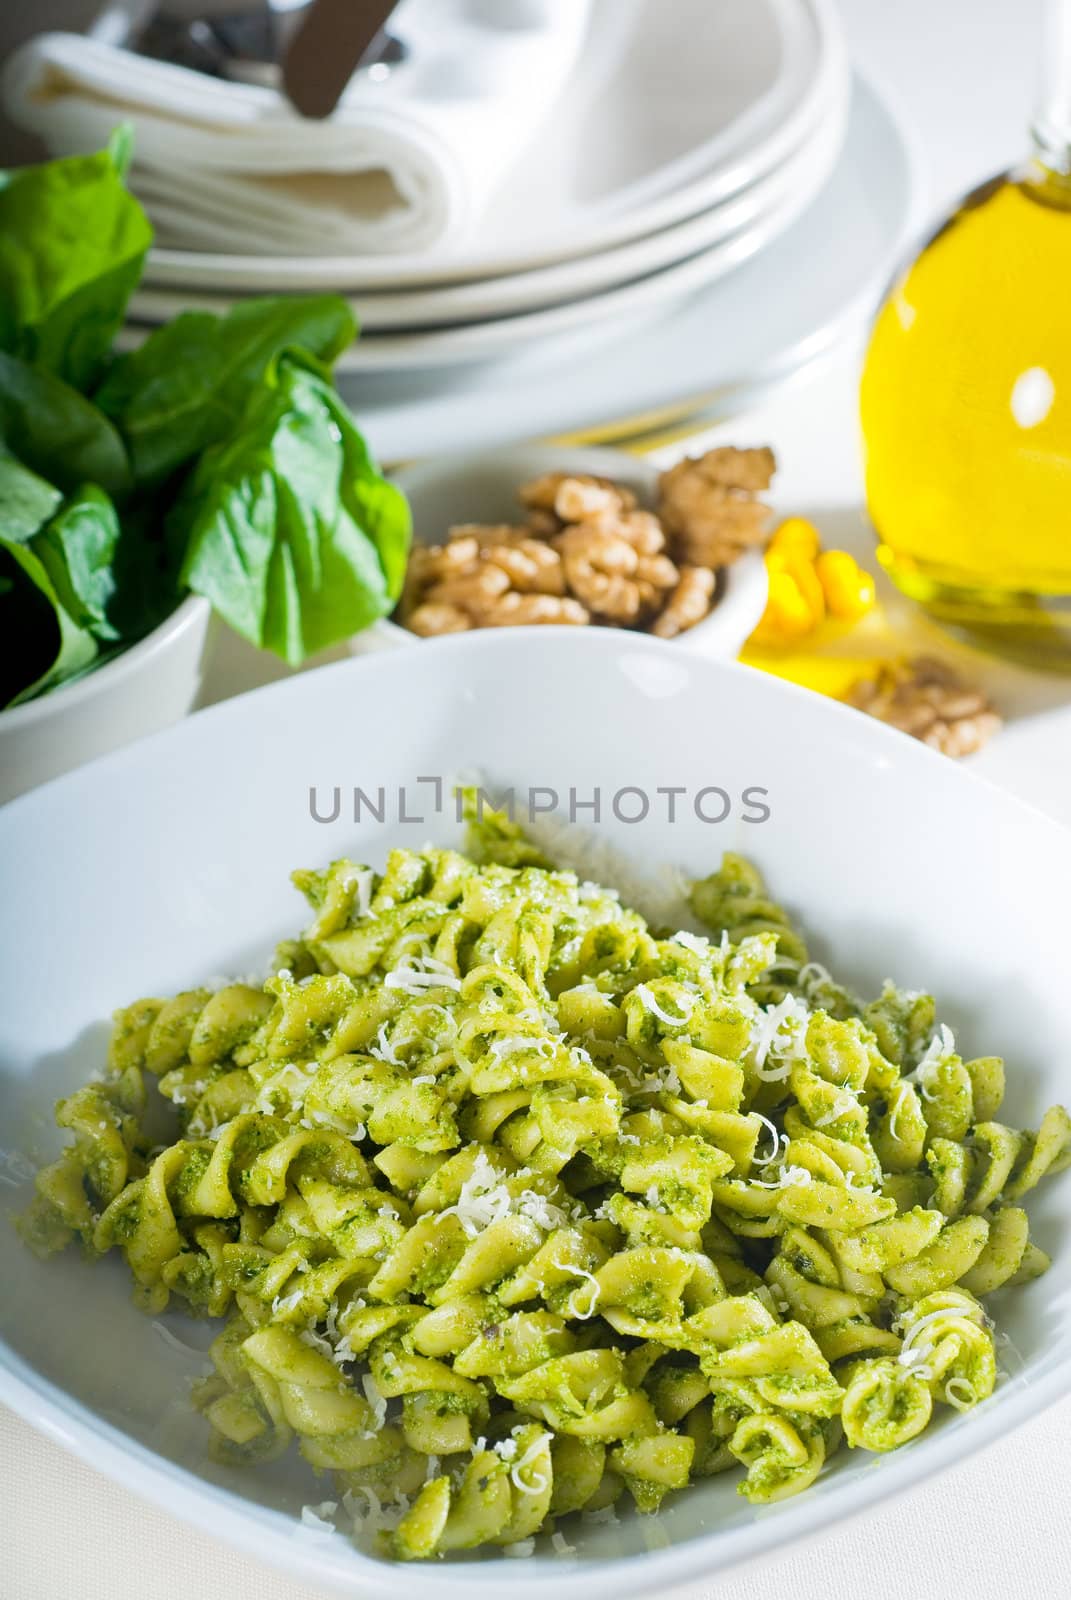 italian fusilli pasta and pesto by keko64